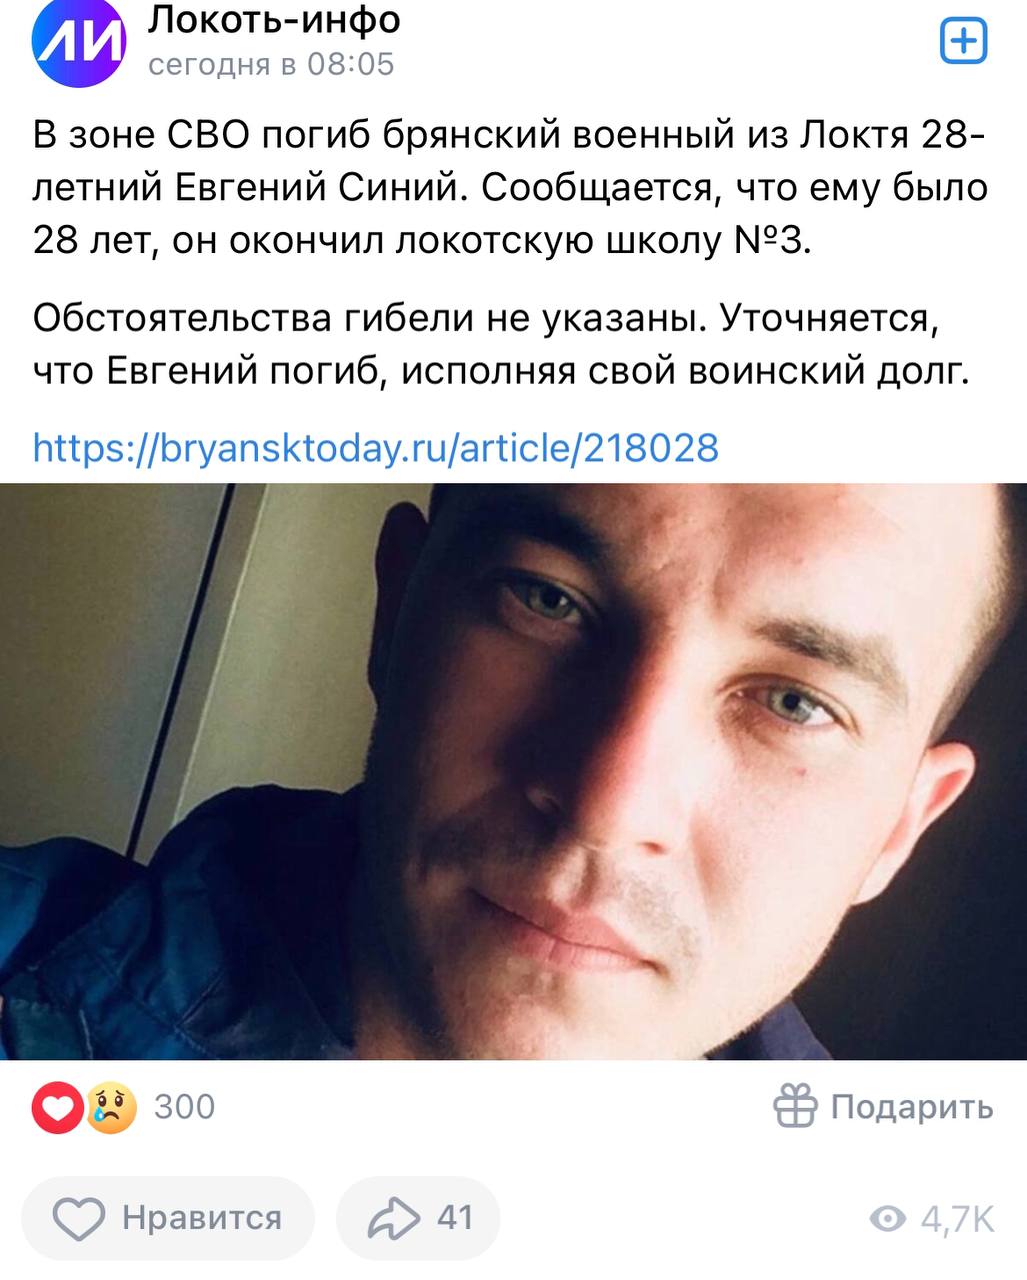 Синий Евгений погиб 28.11.2023 из региона Брянская область, п. Локоть